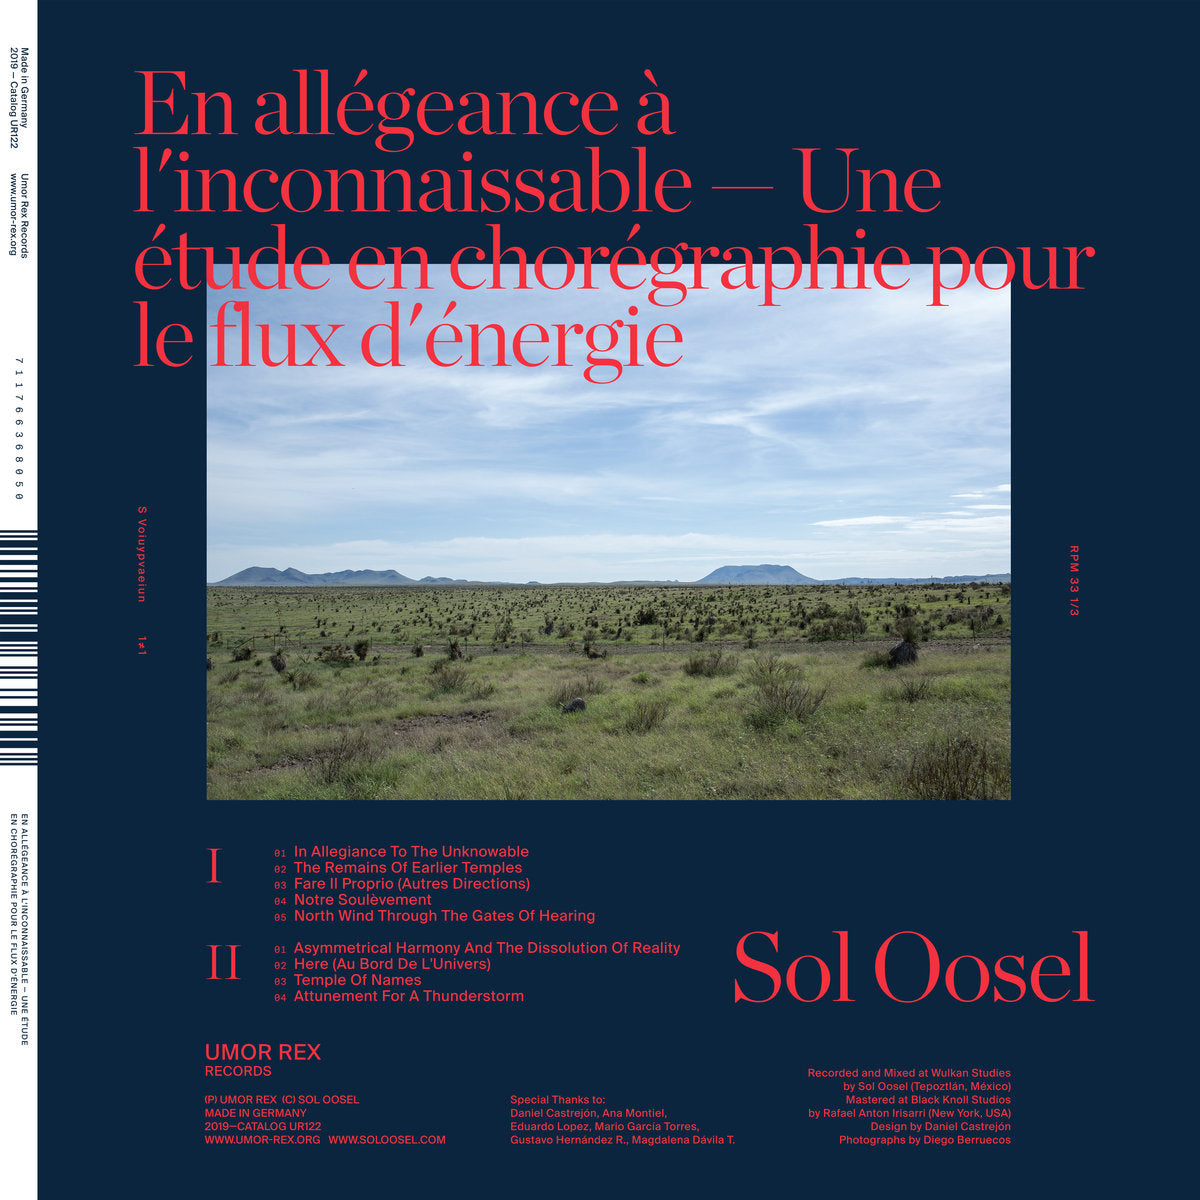 Sol Oosel - En allégeance à l'inconnaissable — Une étude en chorégraphie pour le flux d'énergie (Limited Clear Vinyl) Vinil - Salvaje Music Store MEXICO